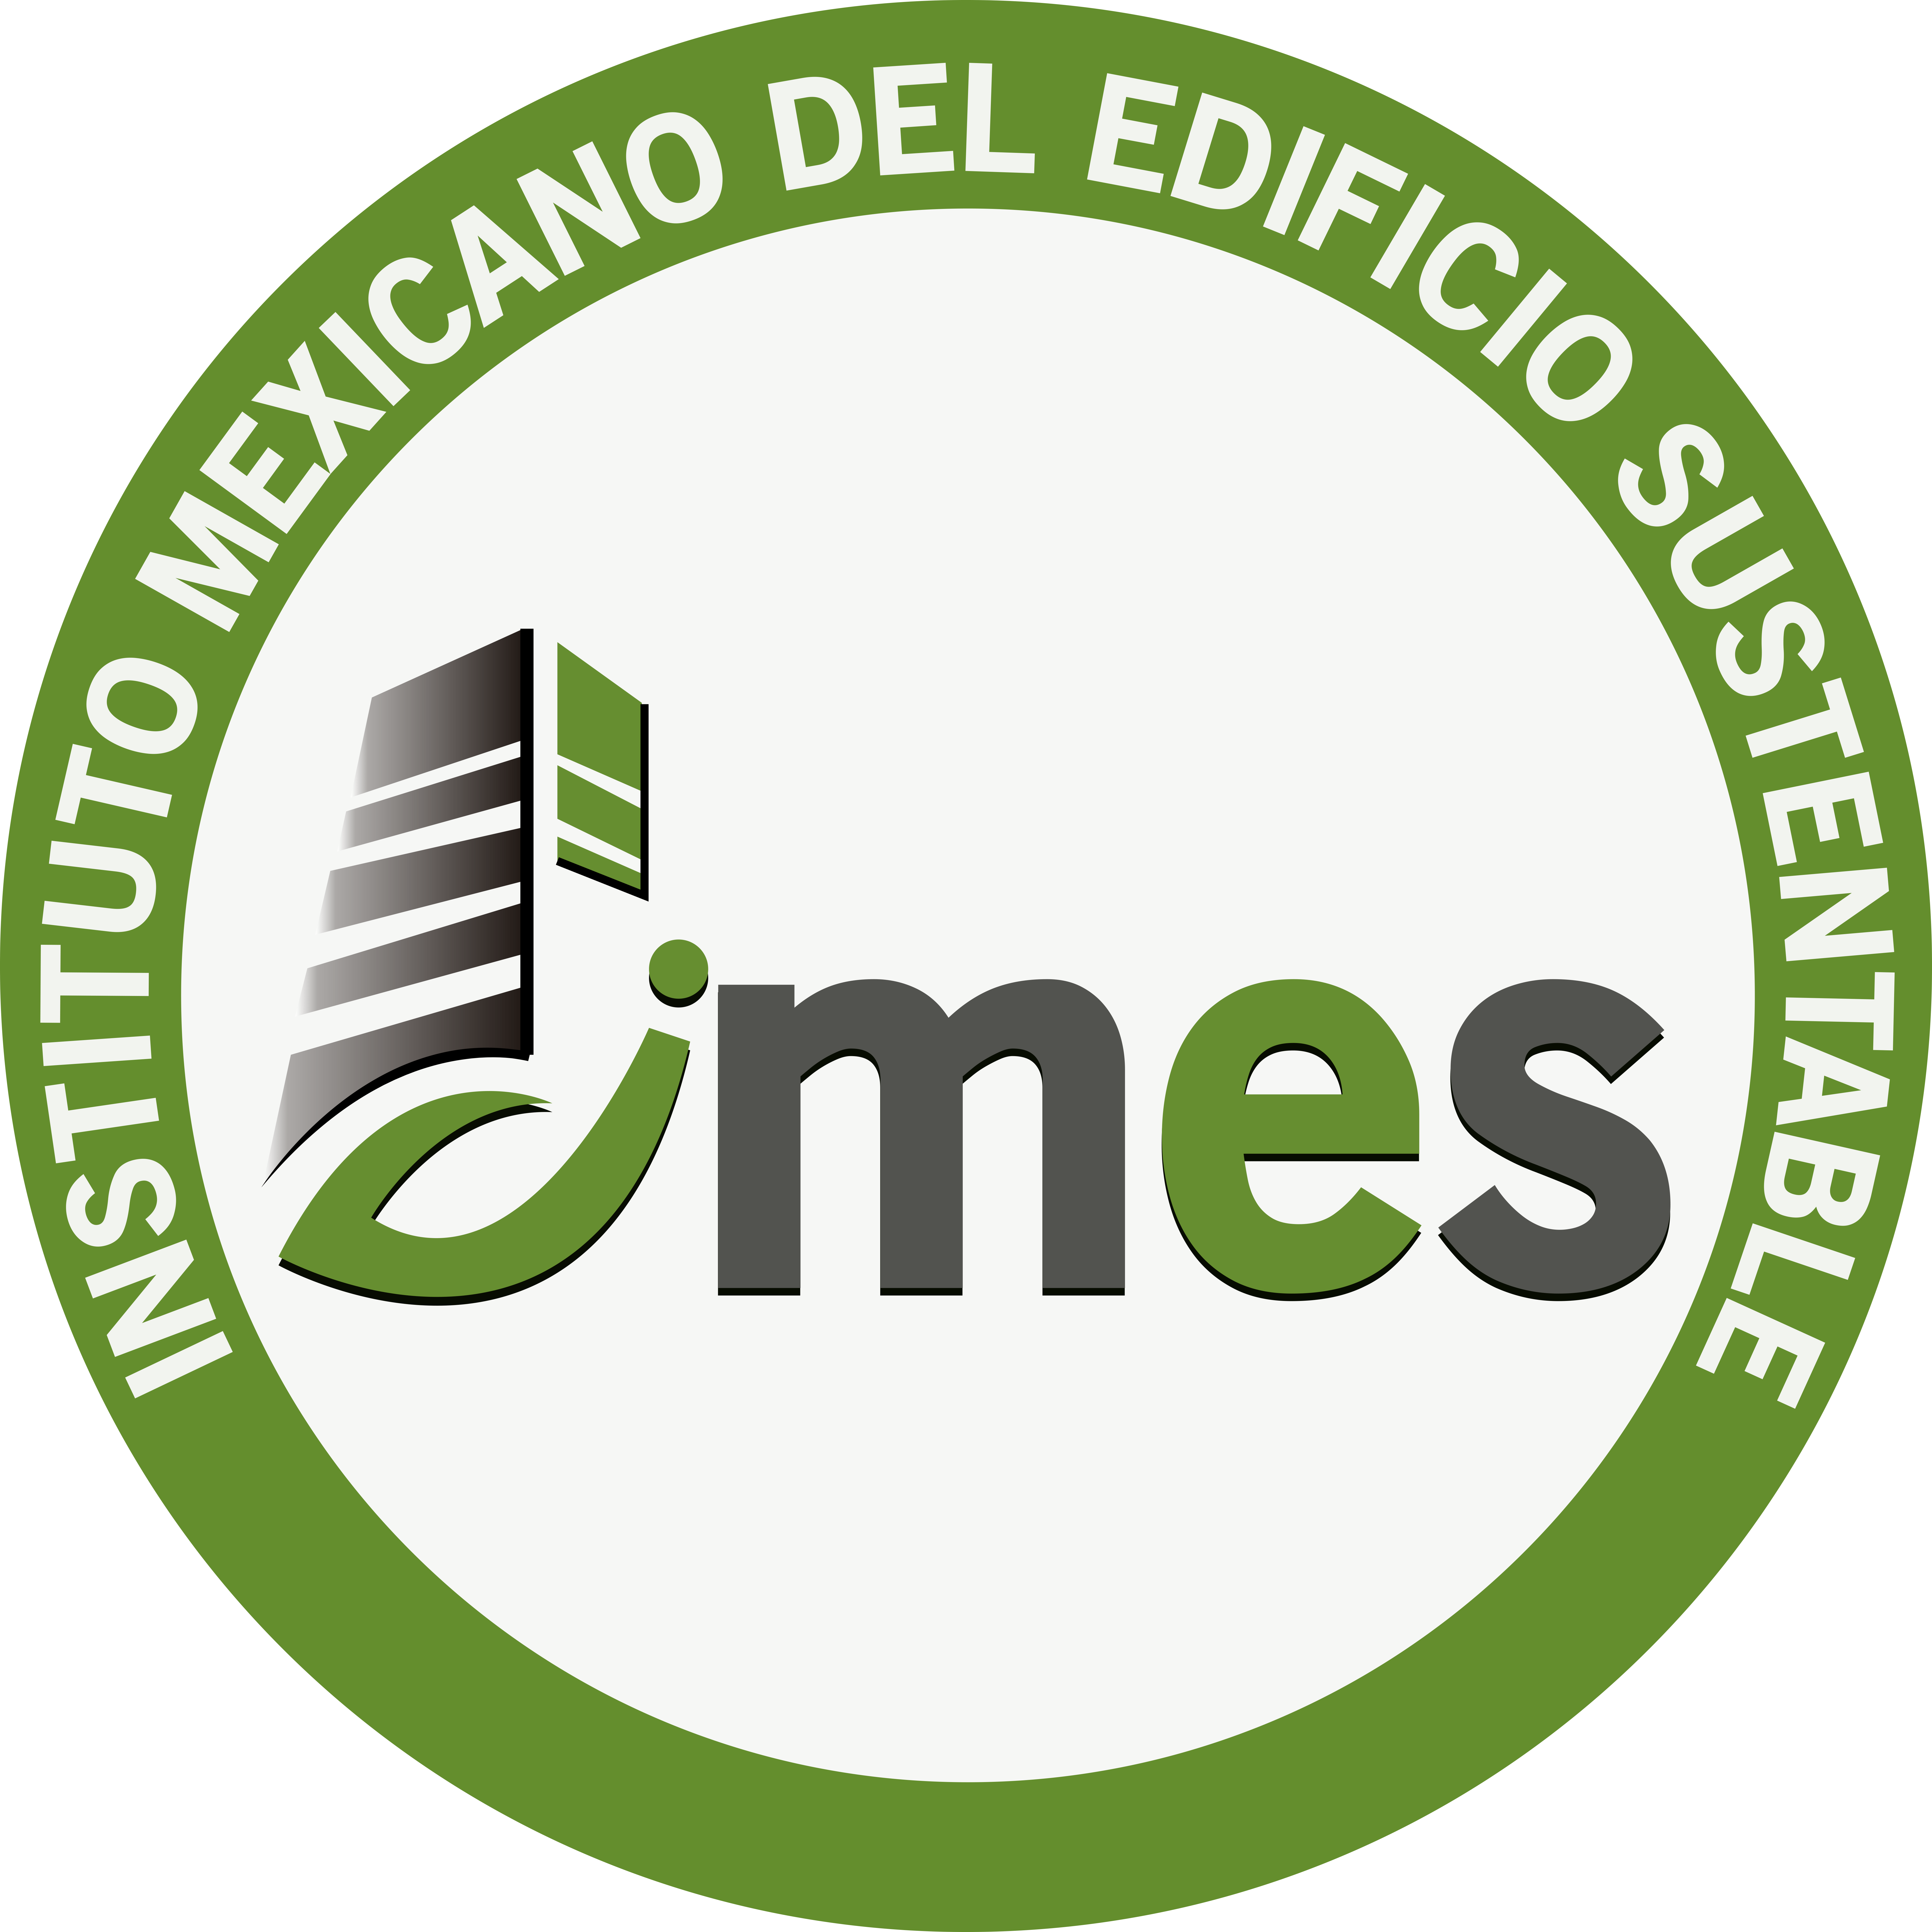 Instituto Mexicano del Edificio Sustentable